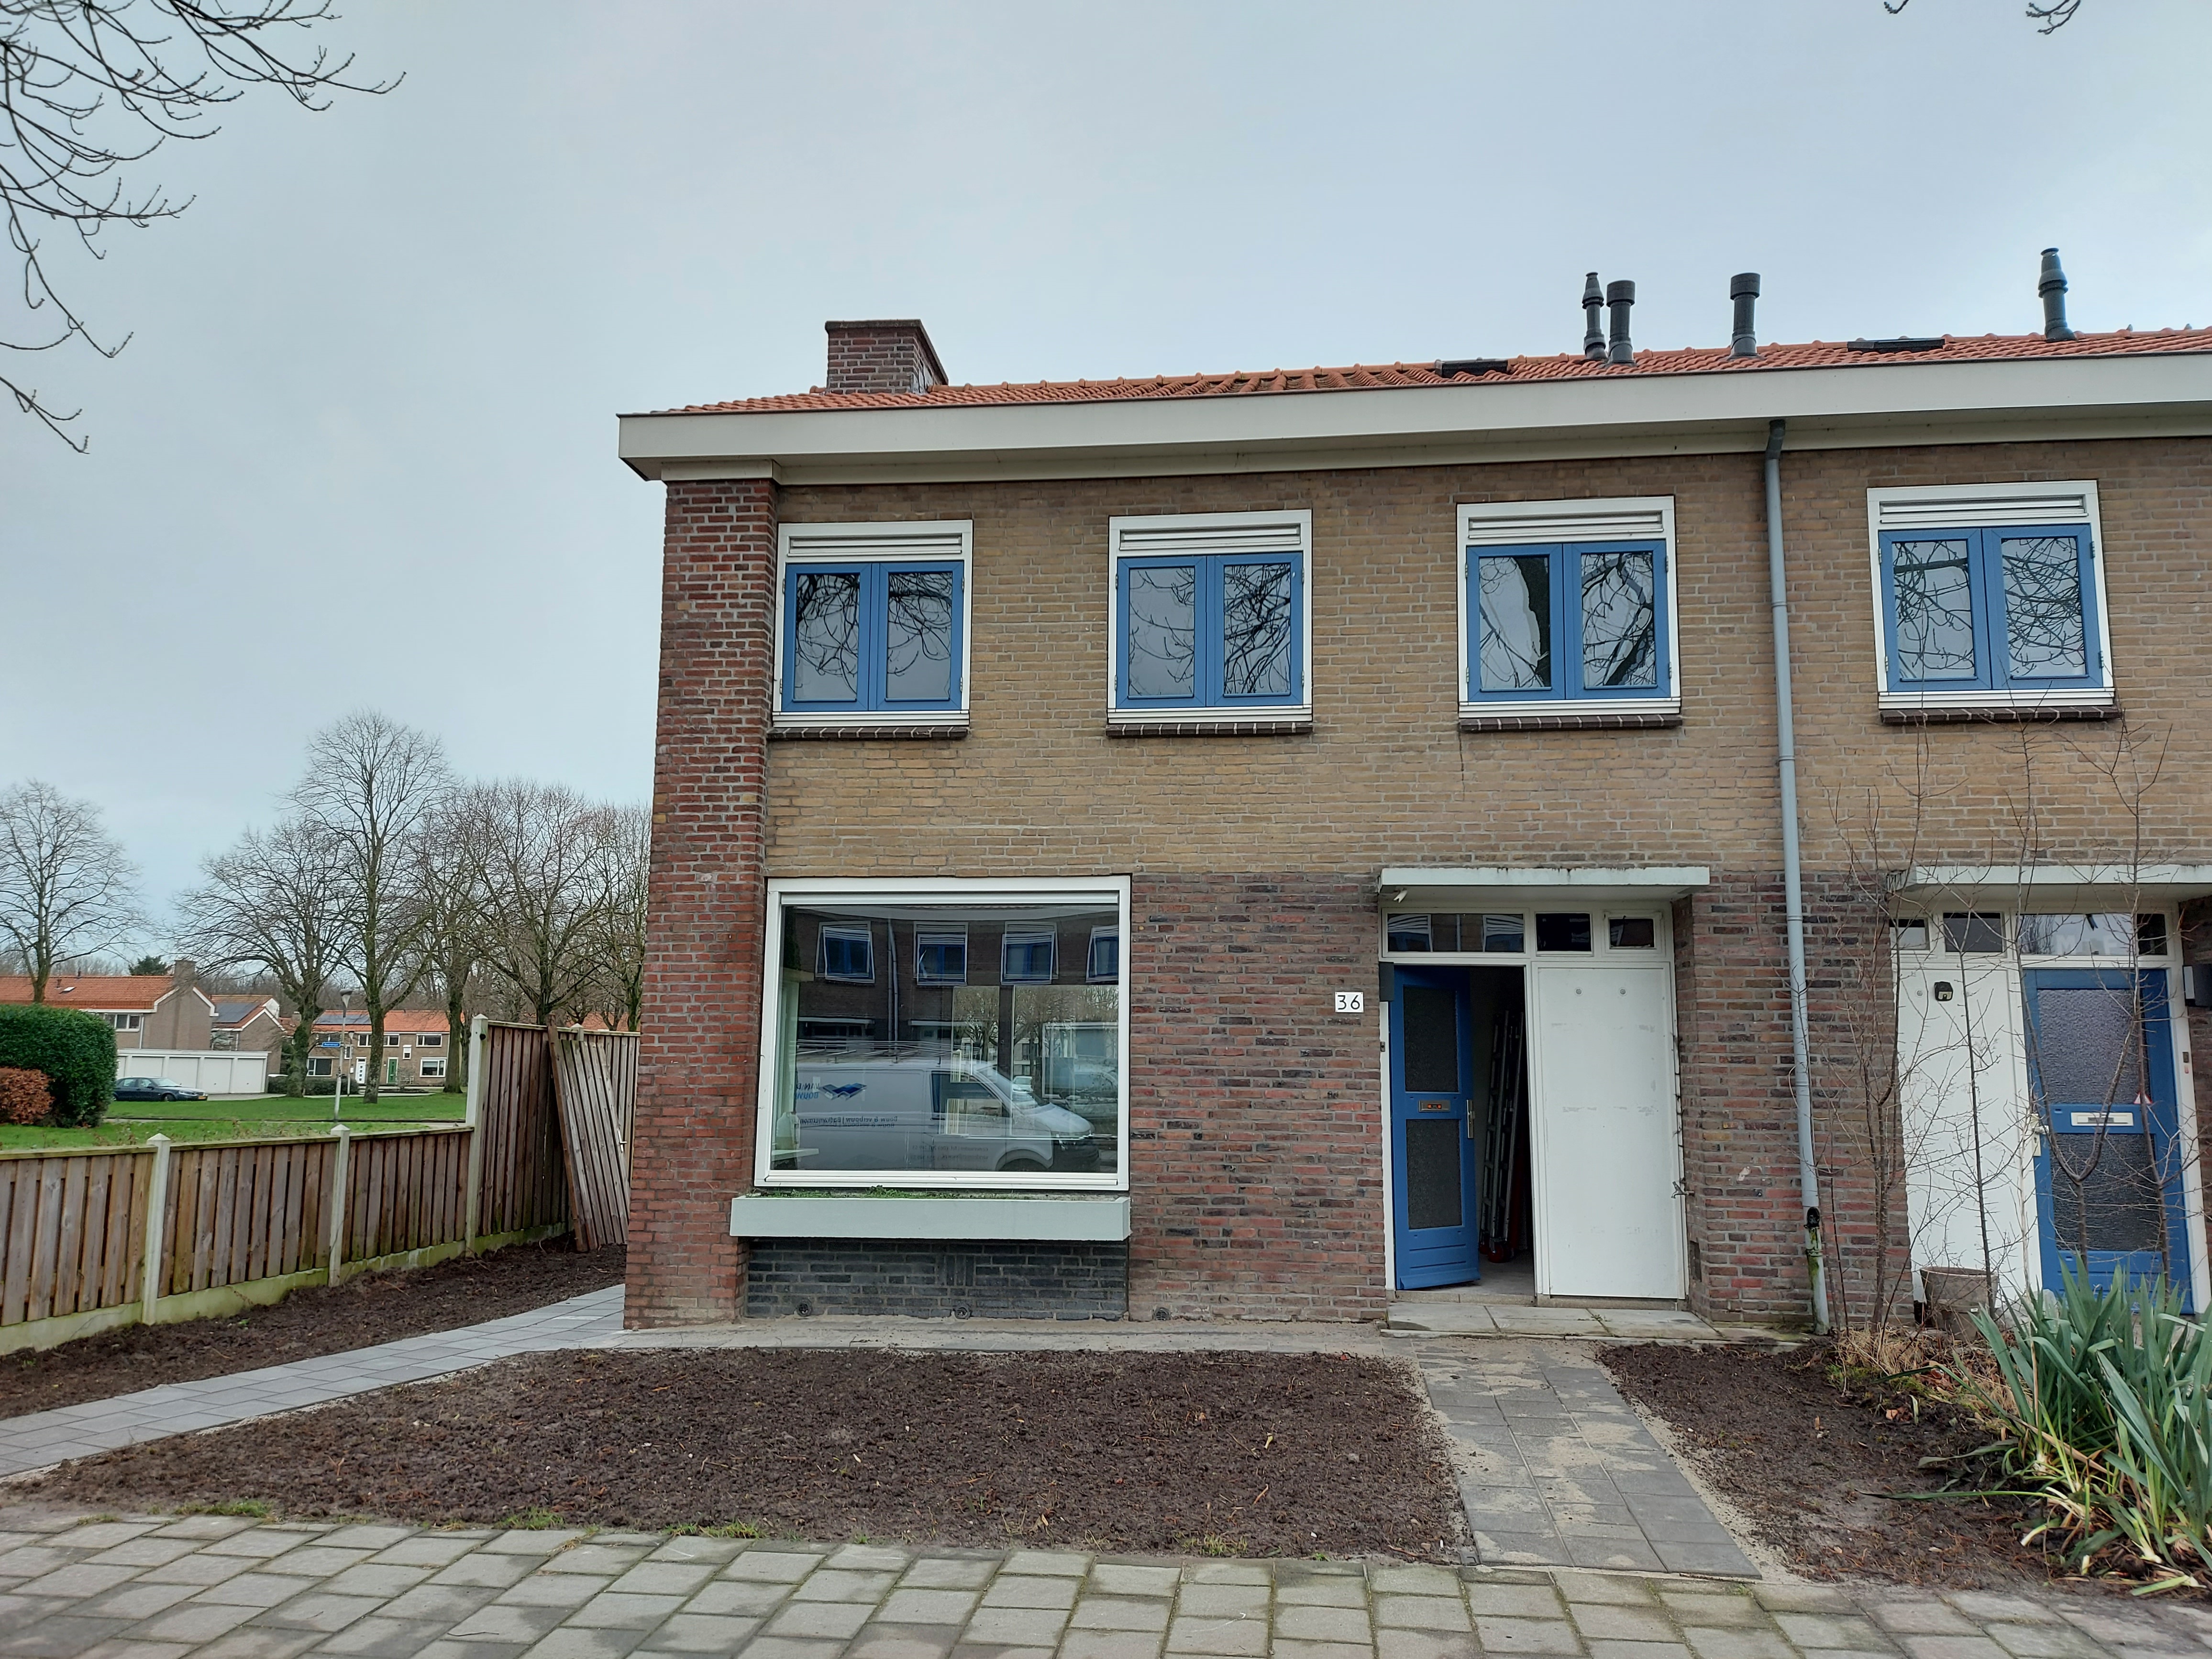 Galjoenstraat 36, 8251 XZ Dronten, Nederland